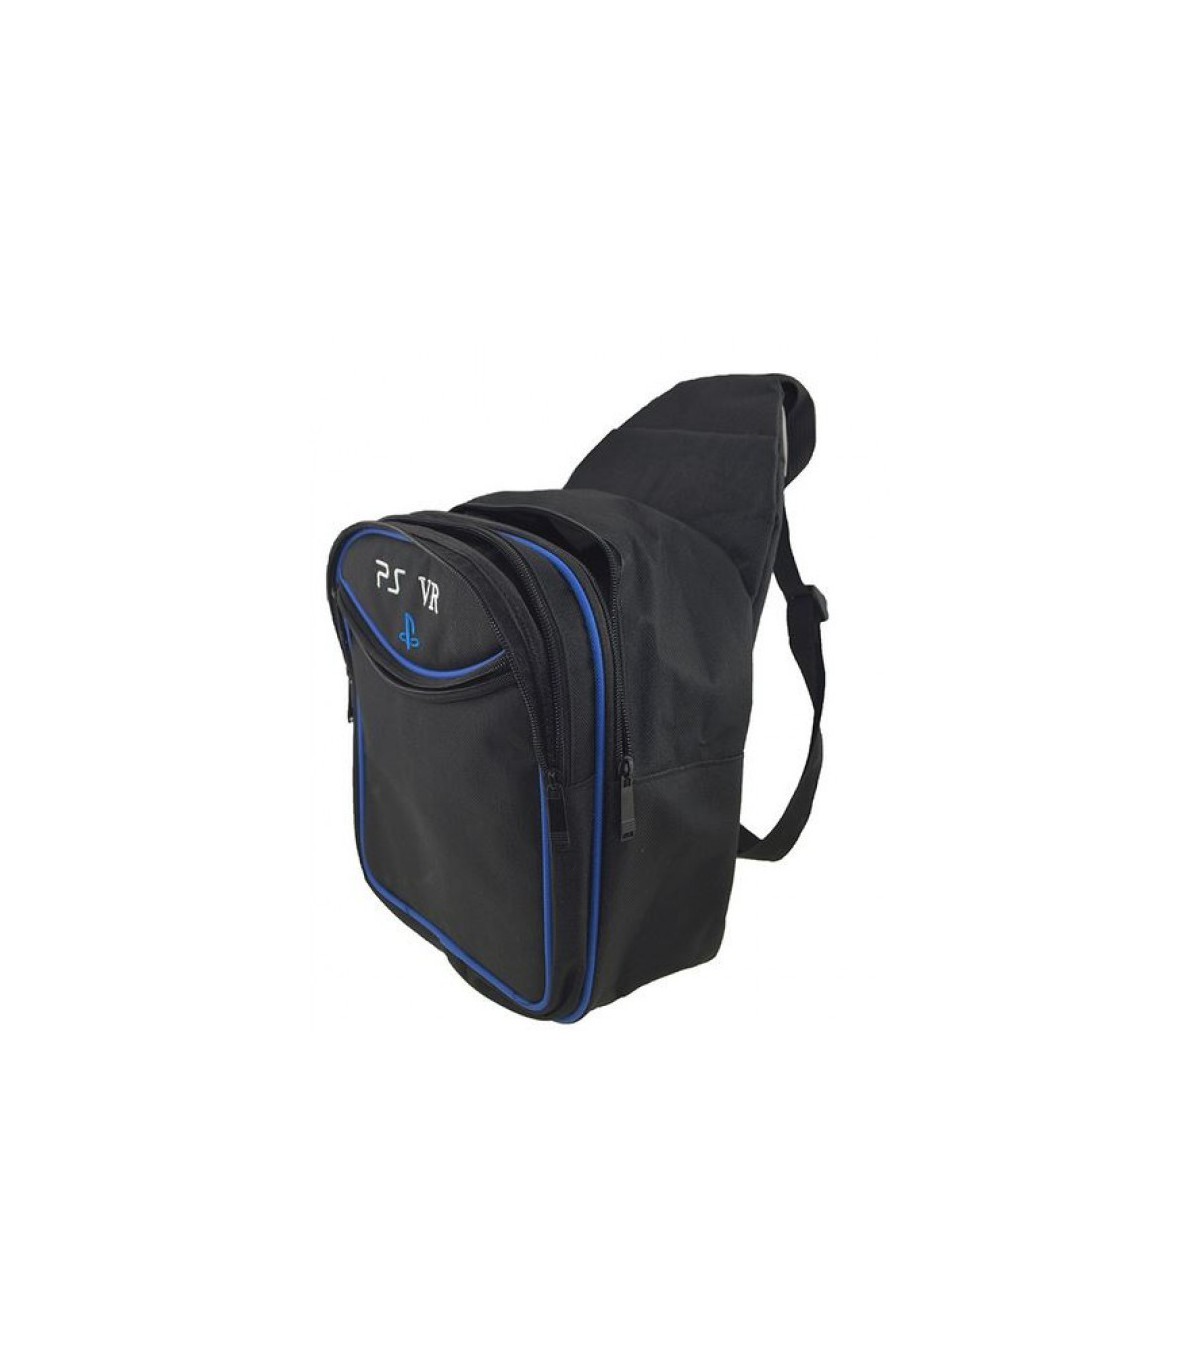 کیف پلی استیشن وی آر Playstation VR Bag